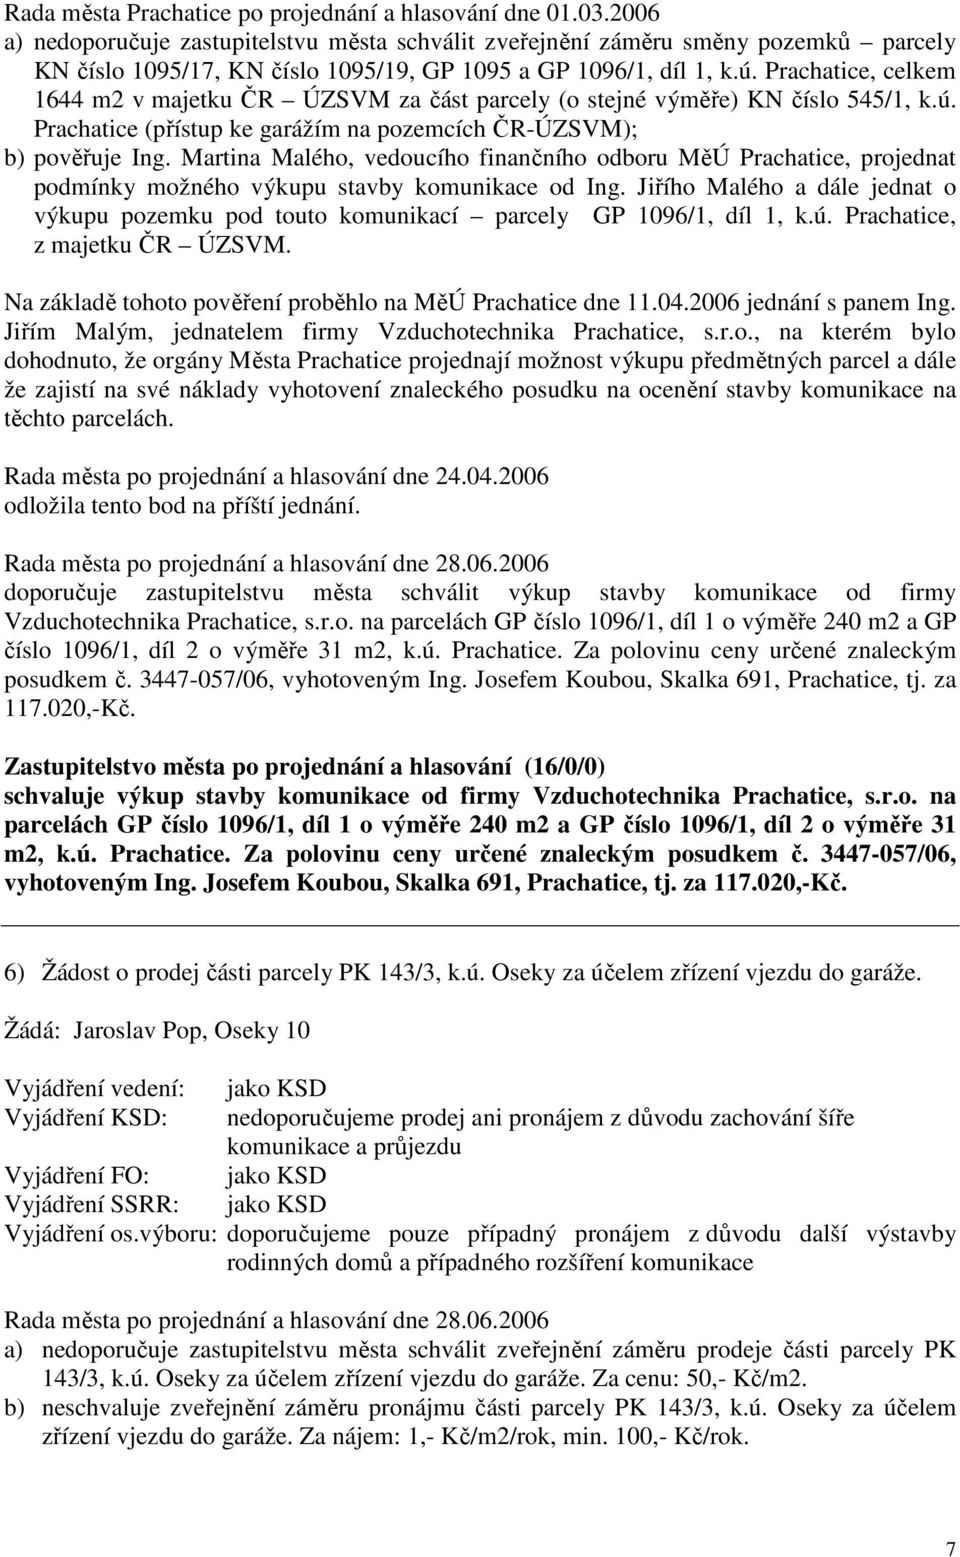 Prachatice, celkem 1644 m2 v majetku ČR ÚZSVM za část parcely (o stejné výměře) KN číslo 545/1, k.ú. Prachatice (přístup ke garážím na pozemcích ČR-ÚZSVM); b) pověřuje Ing.